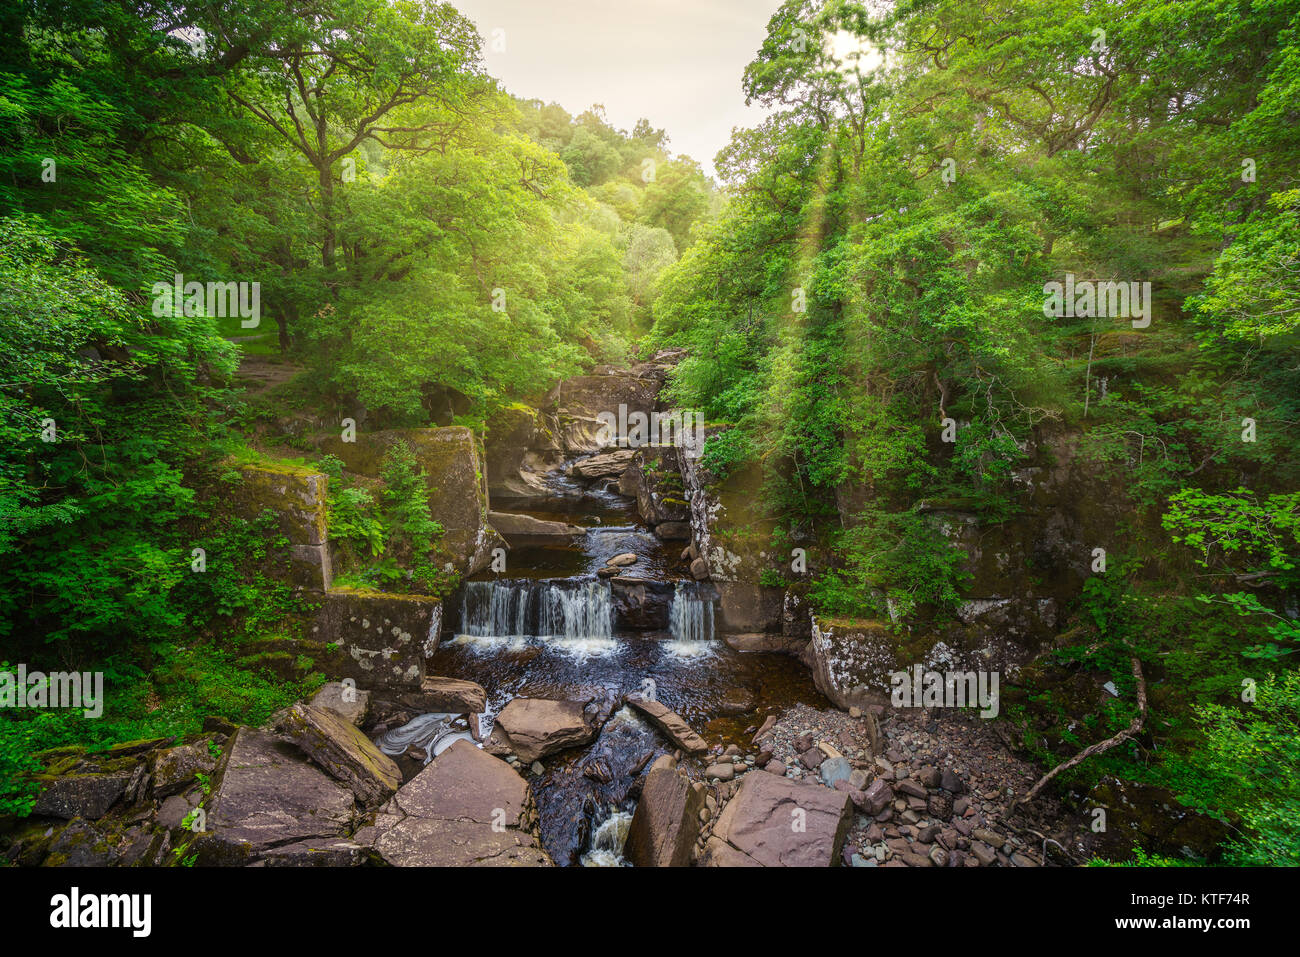 Bracklinn Falls, scenic nature landscape near Callander, small town in the council area of Stirling, Scotland. Stock Photo